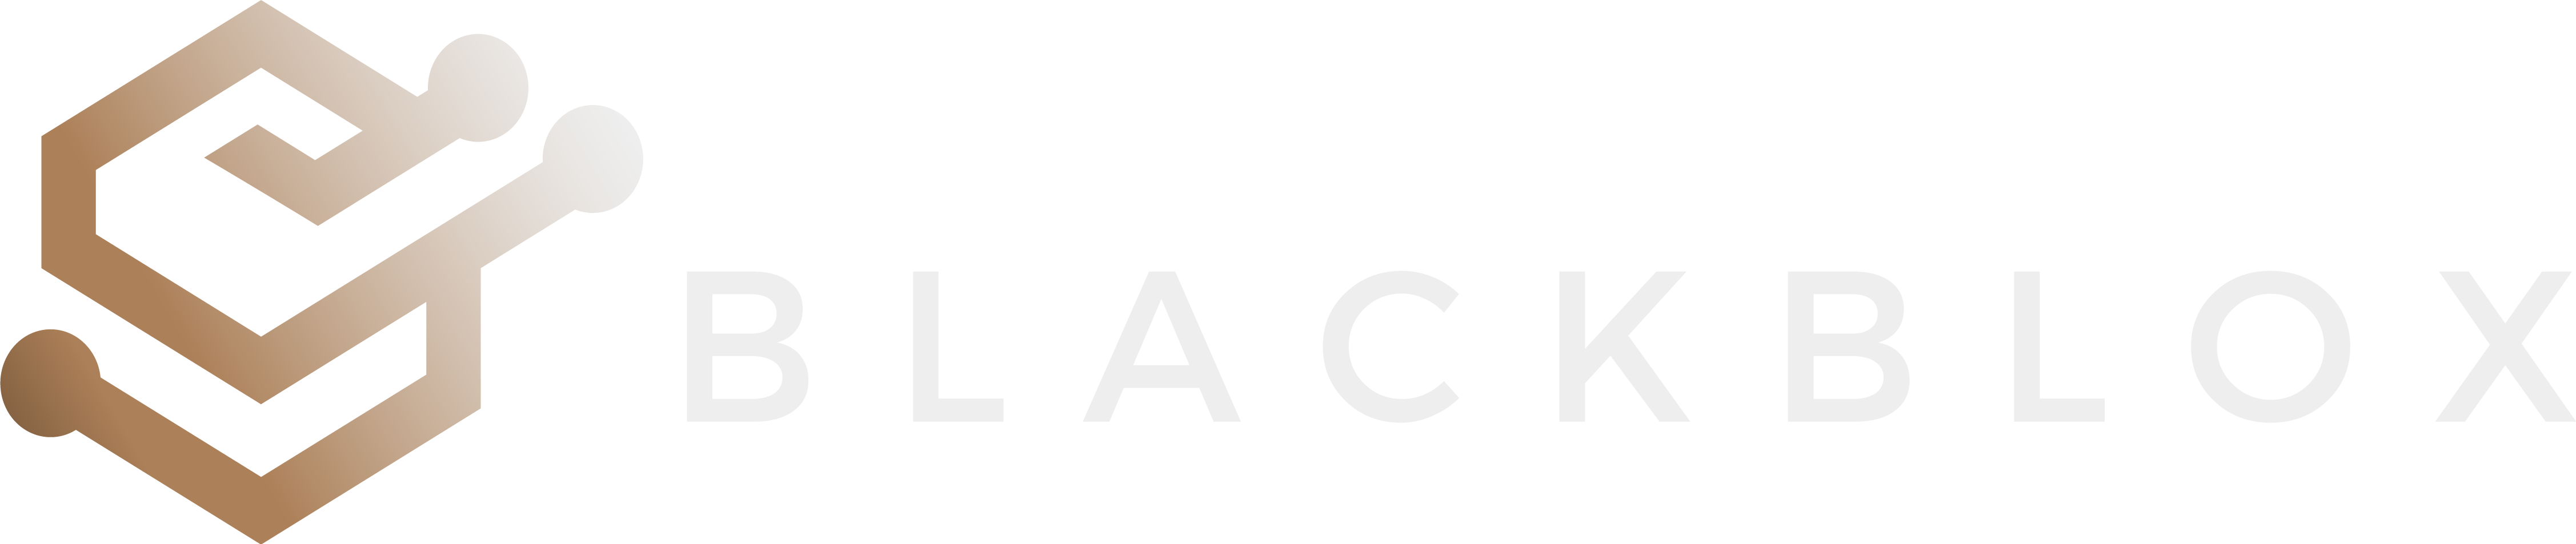 BLACKBLOX logotip horizontalna postavitev